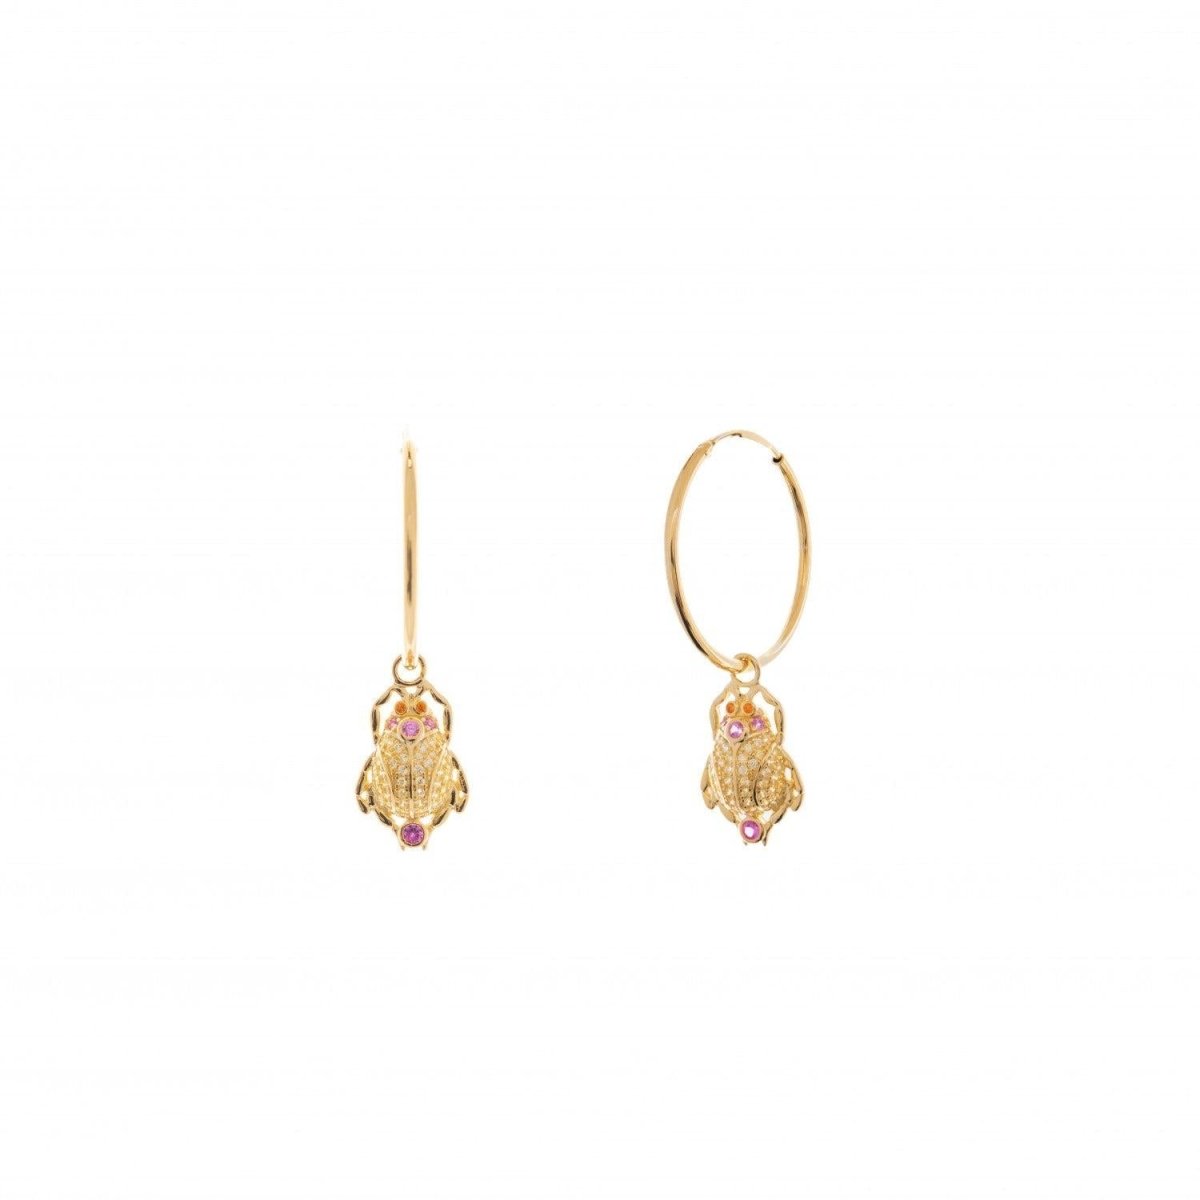 Earrings - Hoop earrings with beetle design hoop style pendants